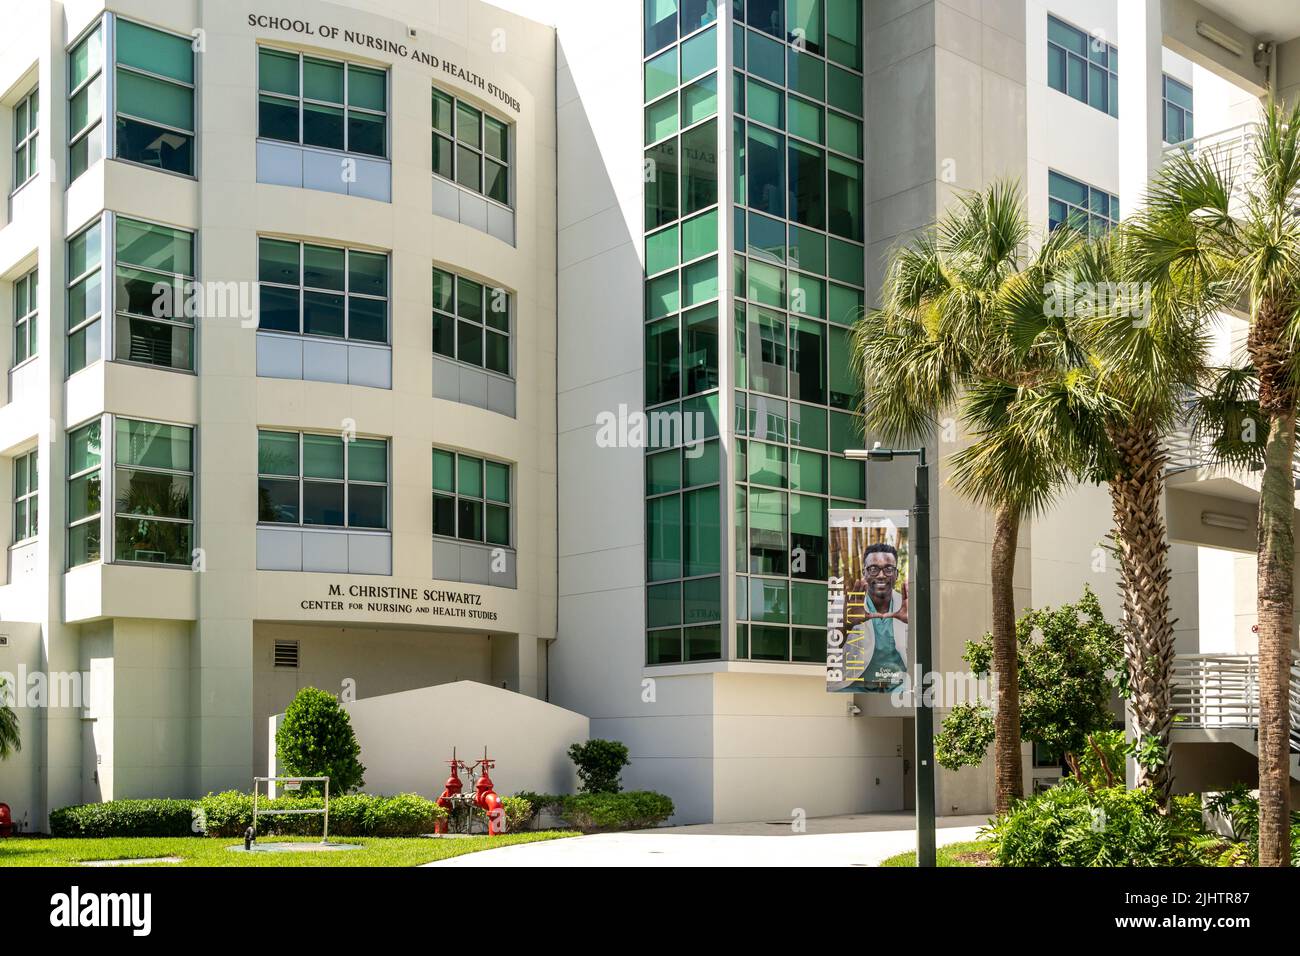 CORAL GABLES, FL, EE.UU. - 2 DE JULIO de 2022: M. Christine Scwartz Centro de Enfermería y Estudios de Salud en el campus de la Universidad de Miami. Foto de stock